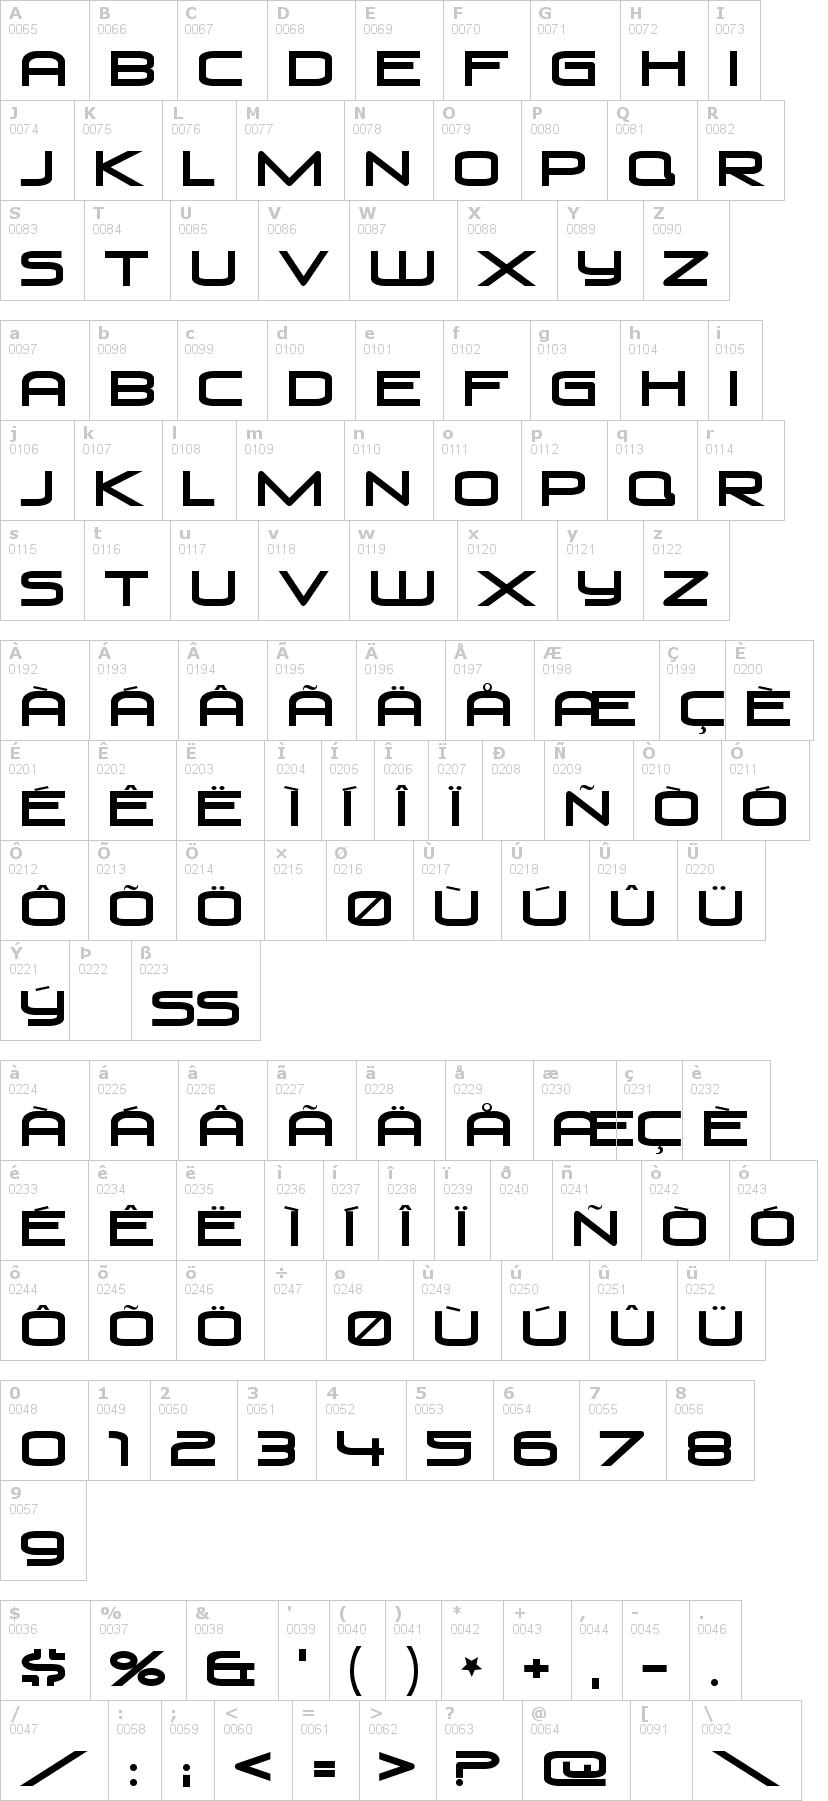 Lettere dell'alfabeto del font venus-rising con le quali è possibile realizzare adesivi prespaziati